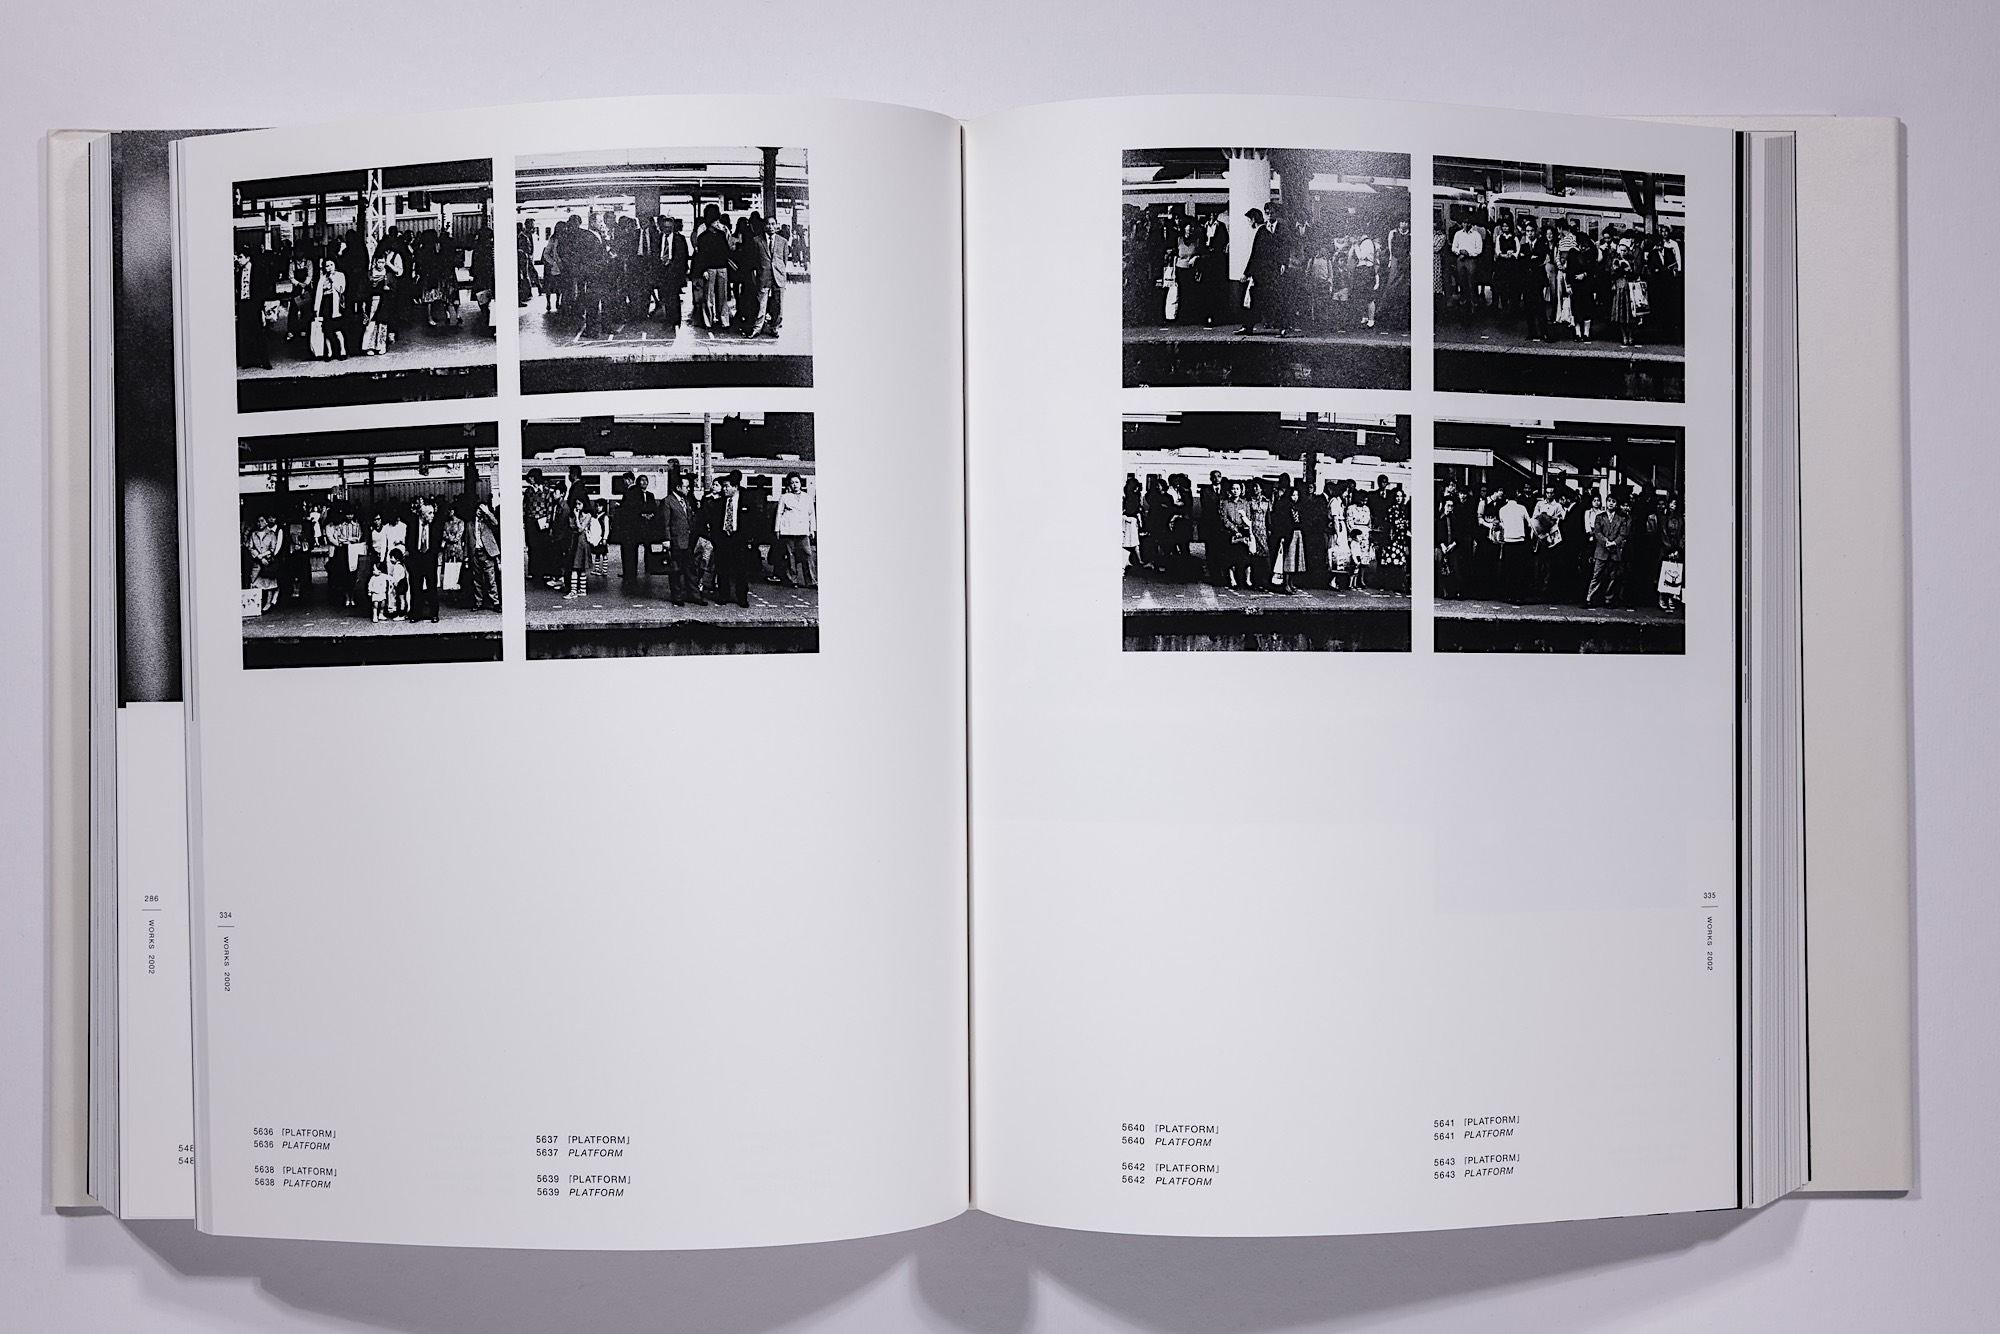 Daido Moriyama - The Complete Works of Daido Moriyama Image 21